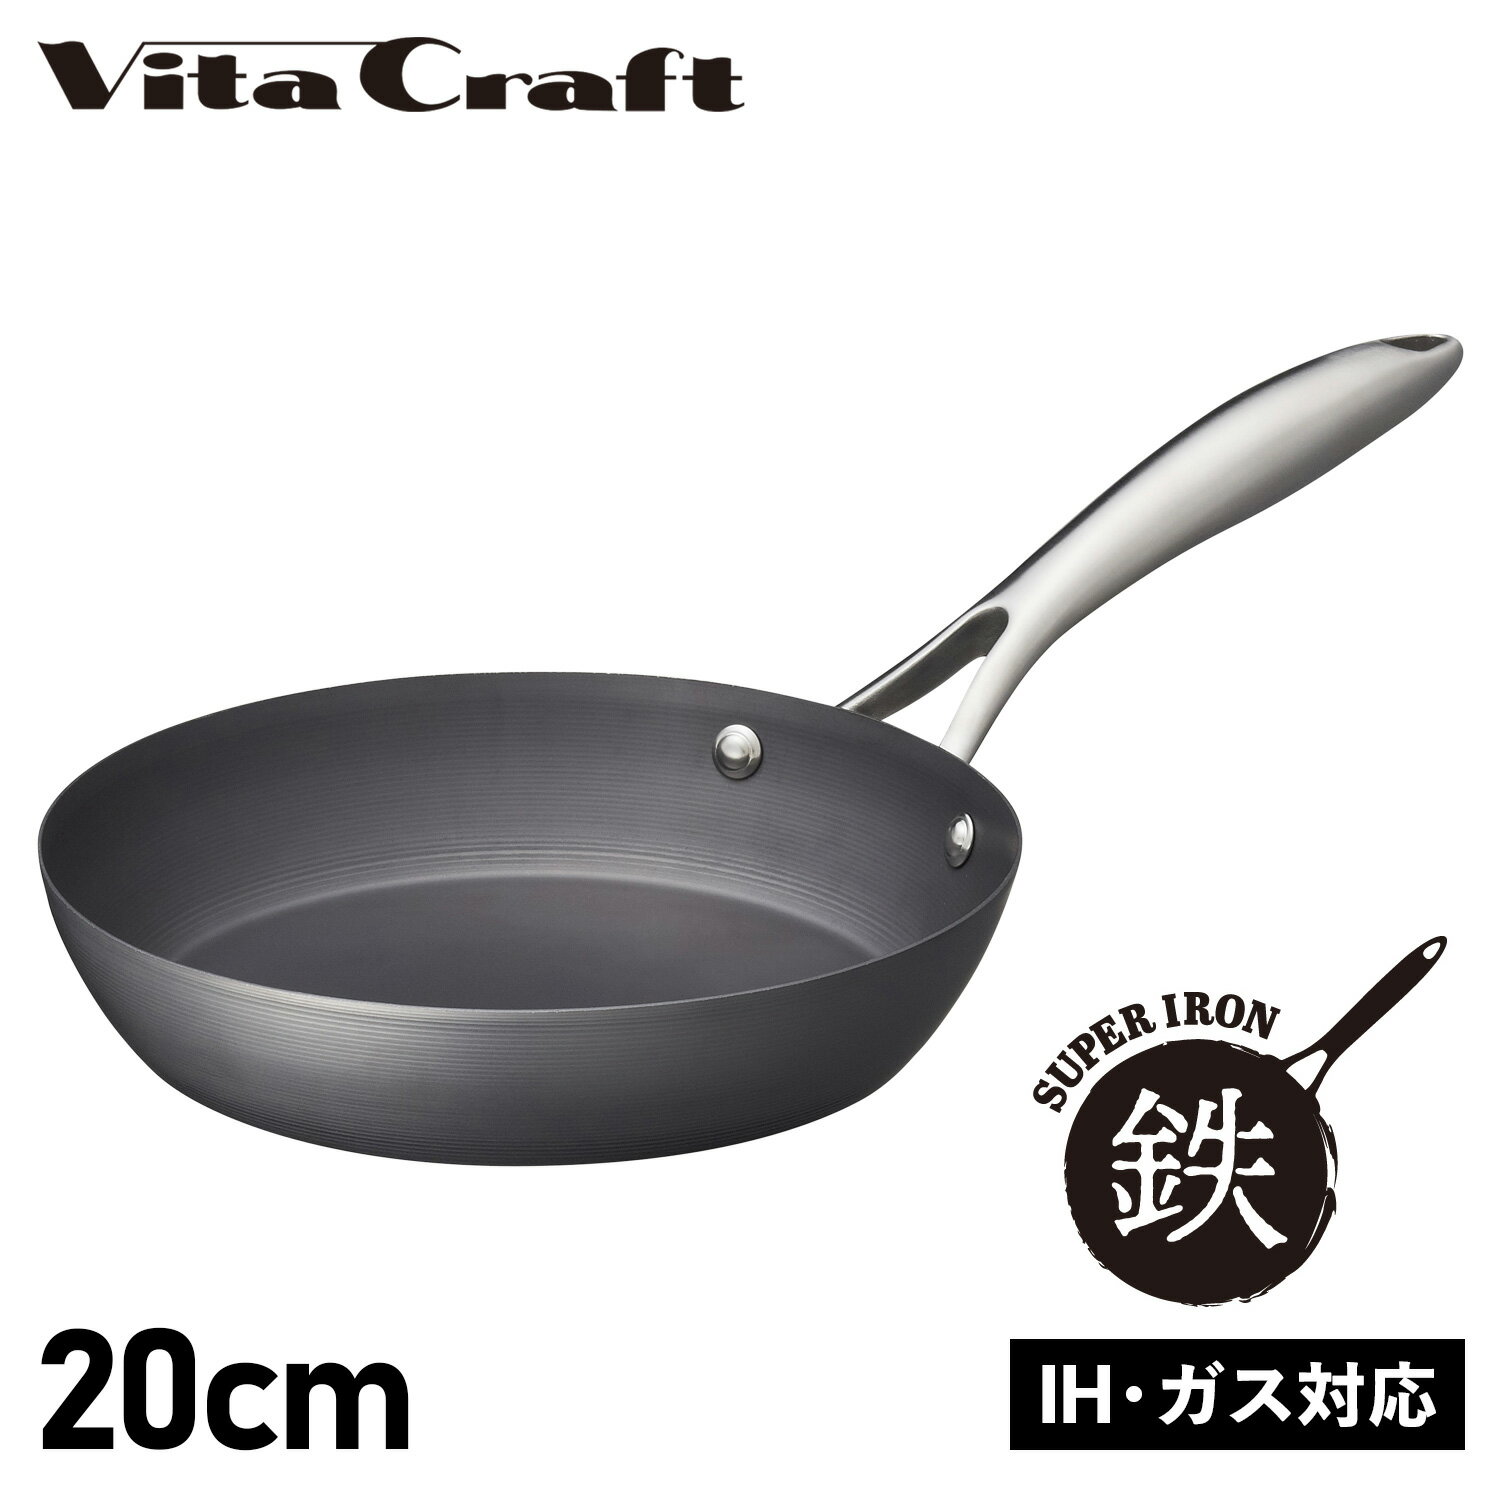 ビタクラフト Vita Craft スーパー鉄 フライパン 20cm IH ガス対応 FRY PAN 2001